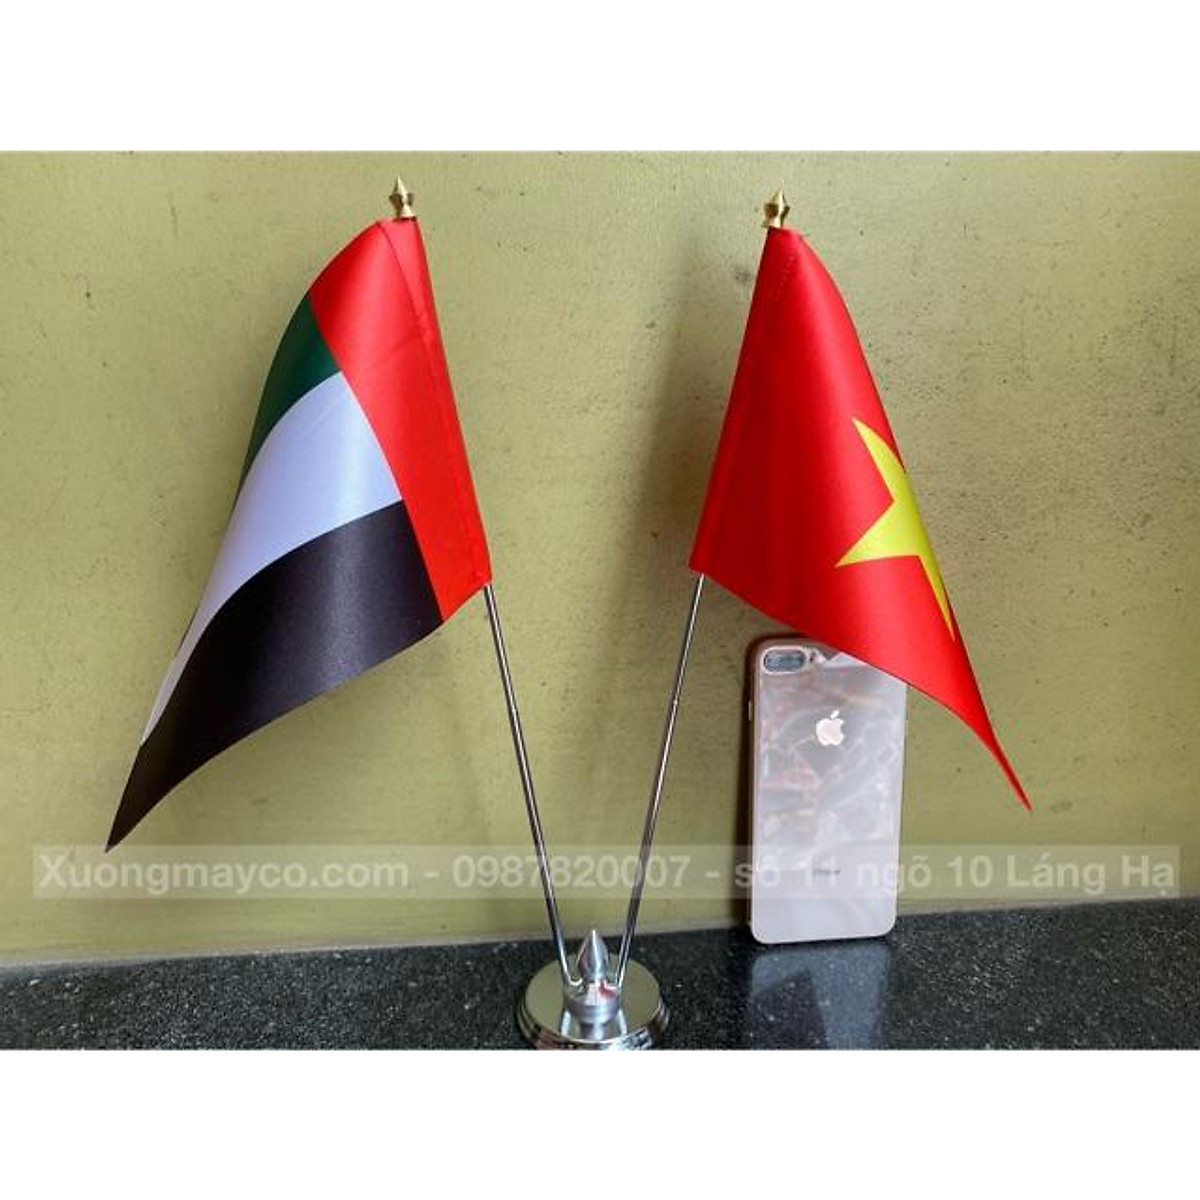 Mua Cờ để bàn Việt Nam - UAE đế đôi inox tại Xưởng may cờ Thành Công